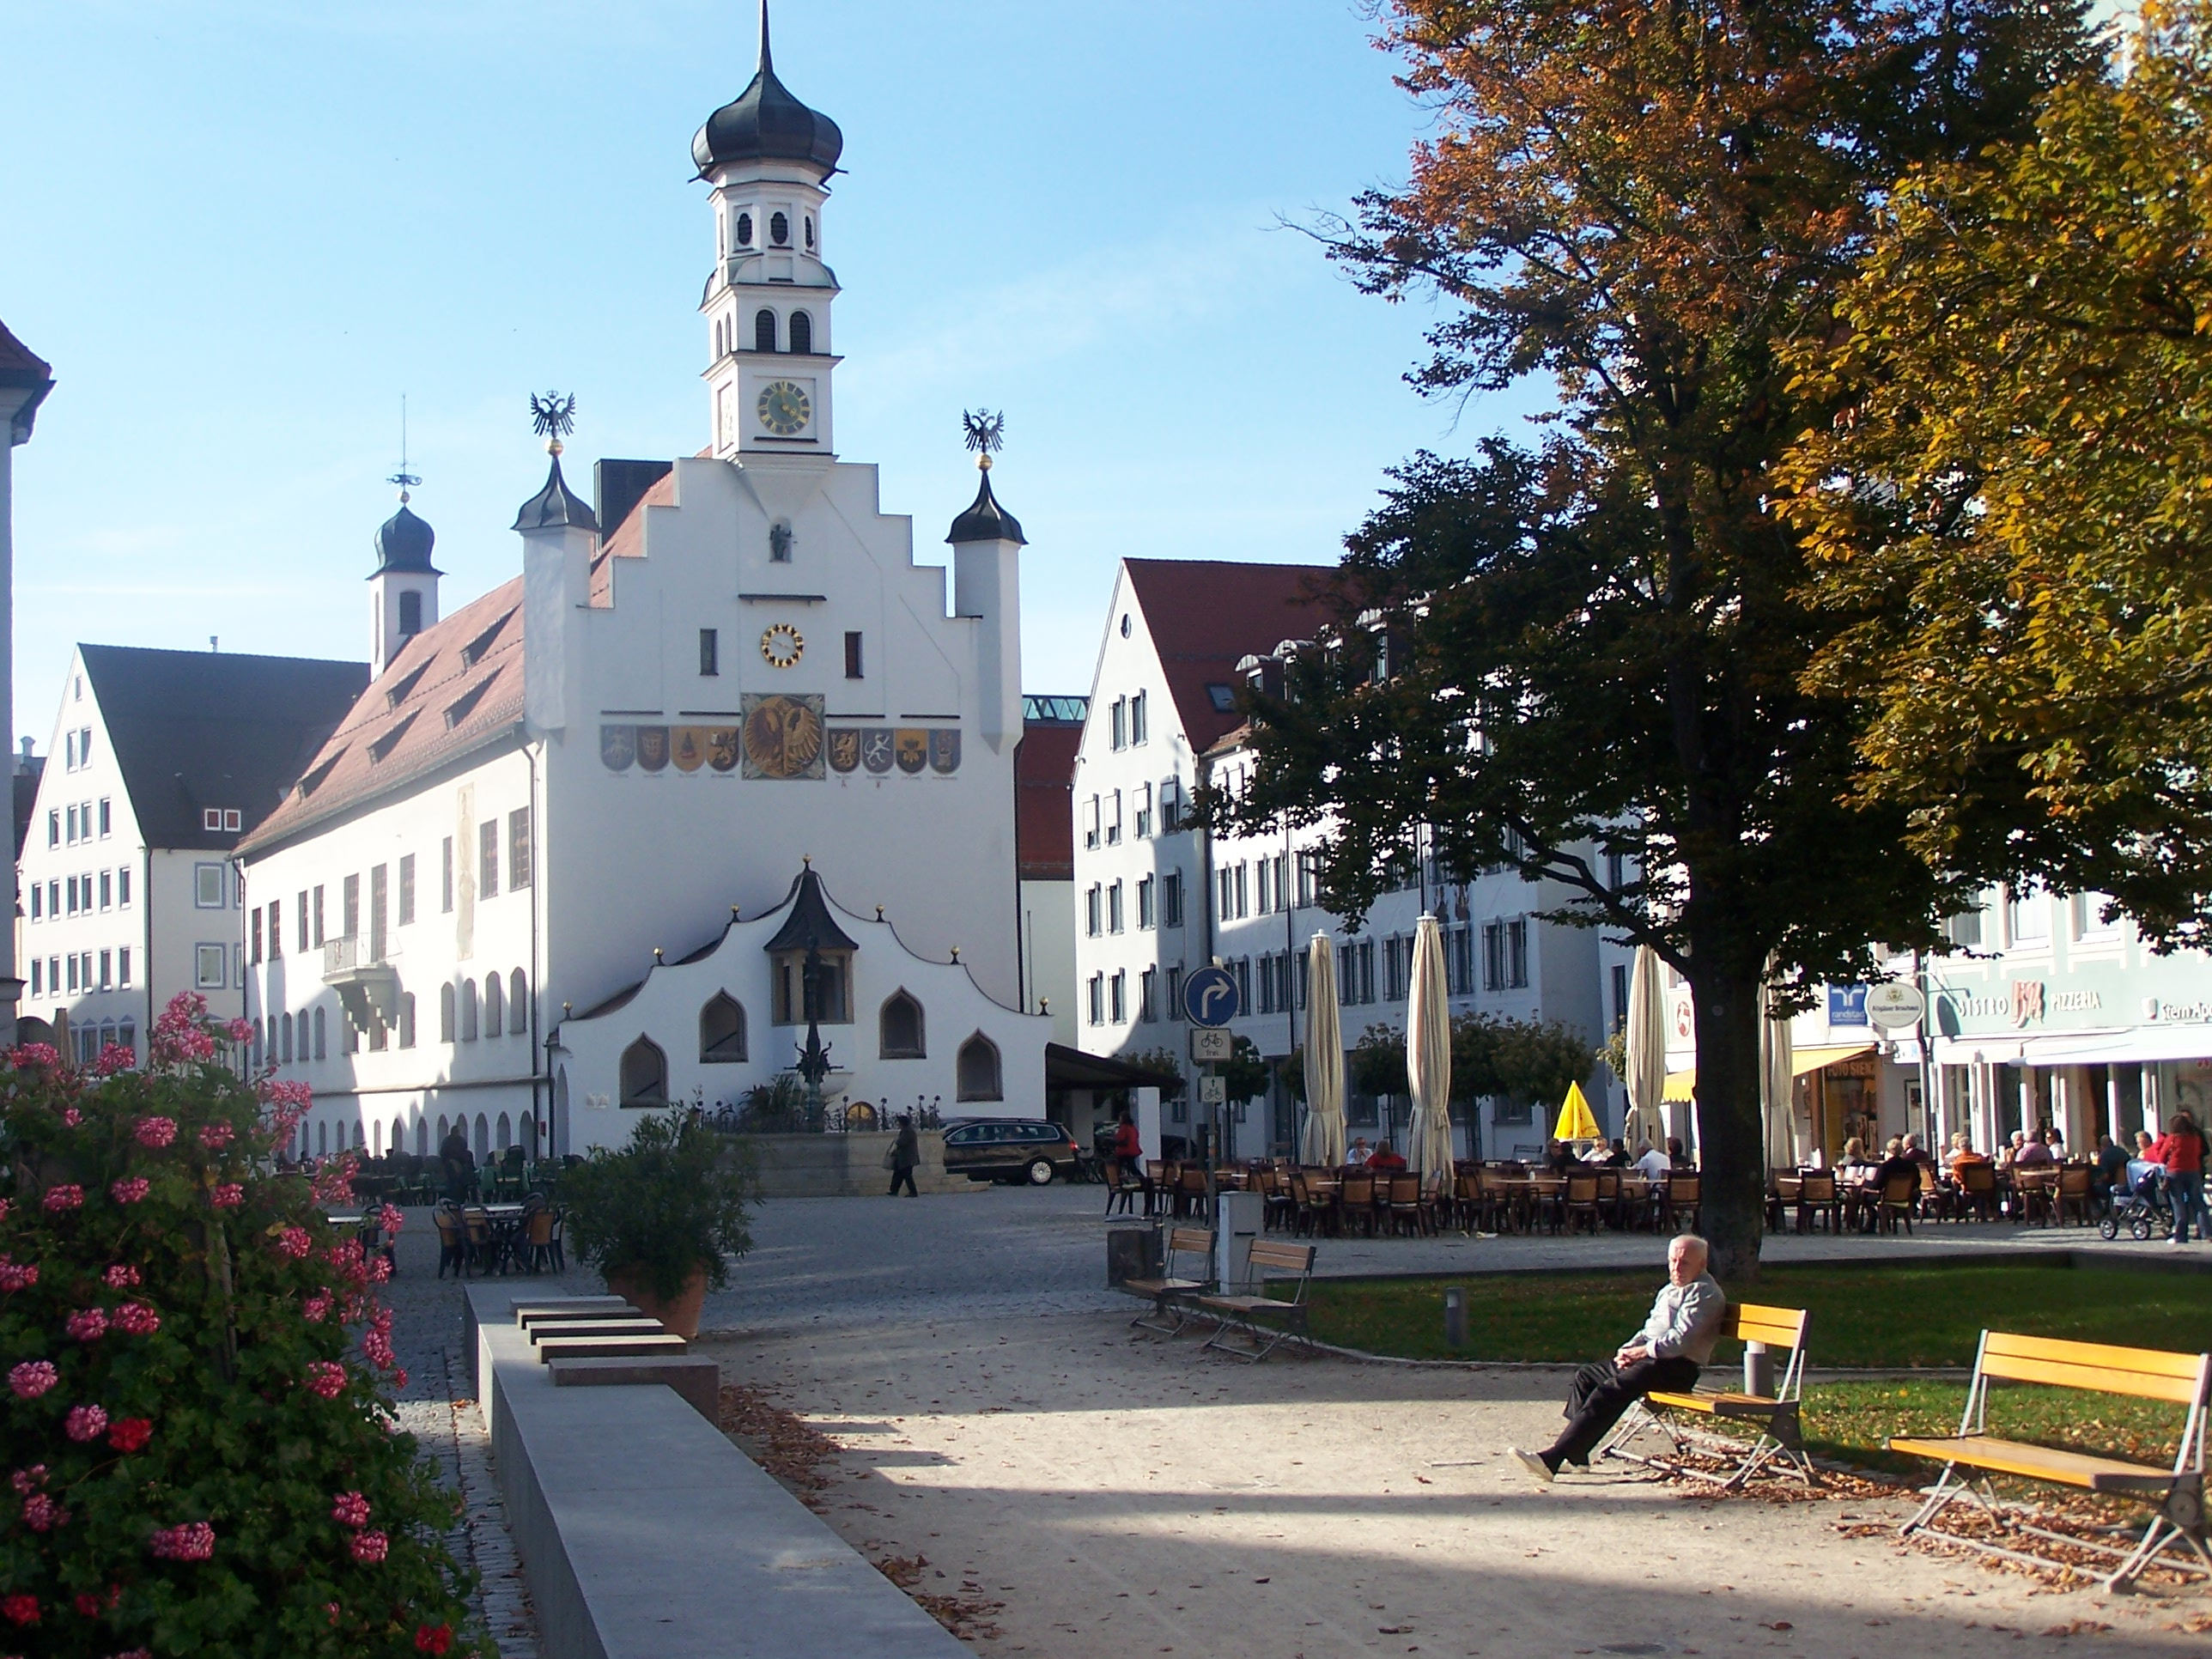  Het hart van de stad wordt gevormd door de ‘Rathausplatz’ met het raadhuis. Dit raadhuis is gebouwd in laatgotische stijl en nam in 1474 de plaats in van het toenmalige houten raadhuis.